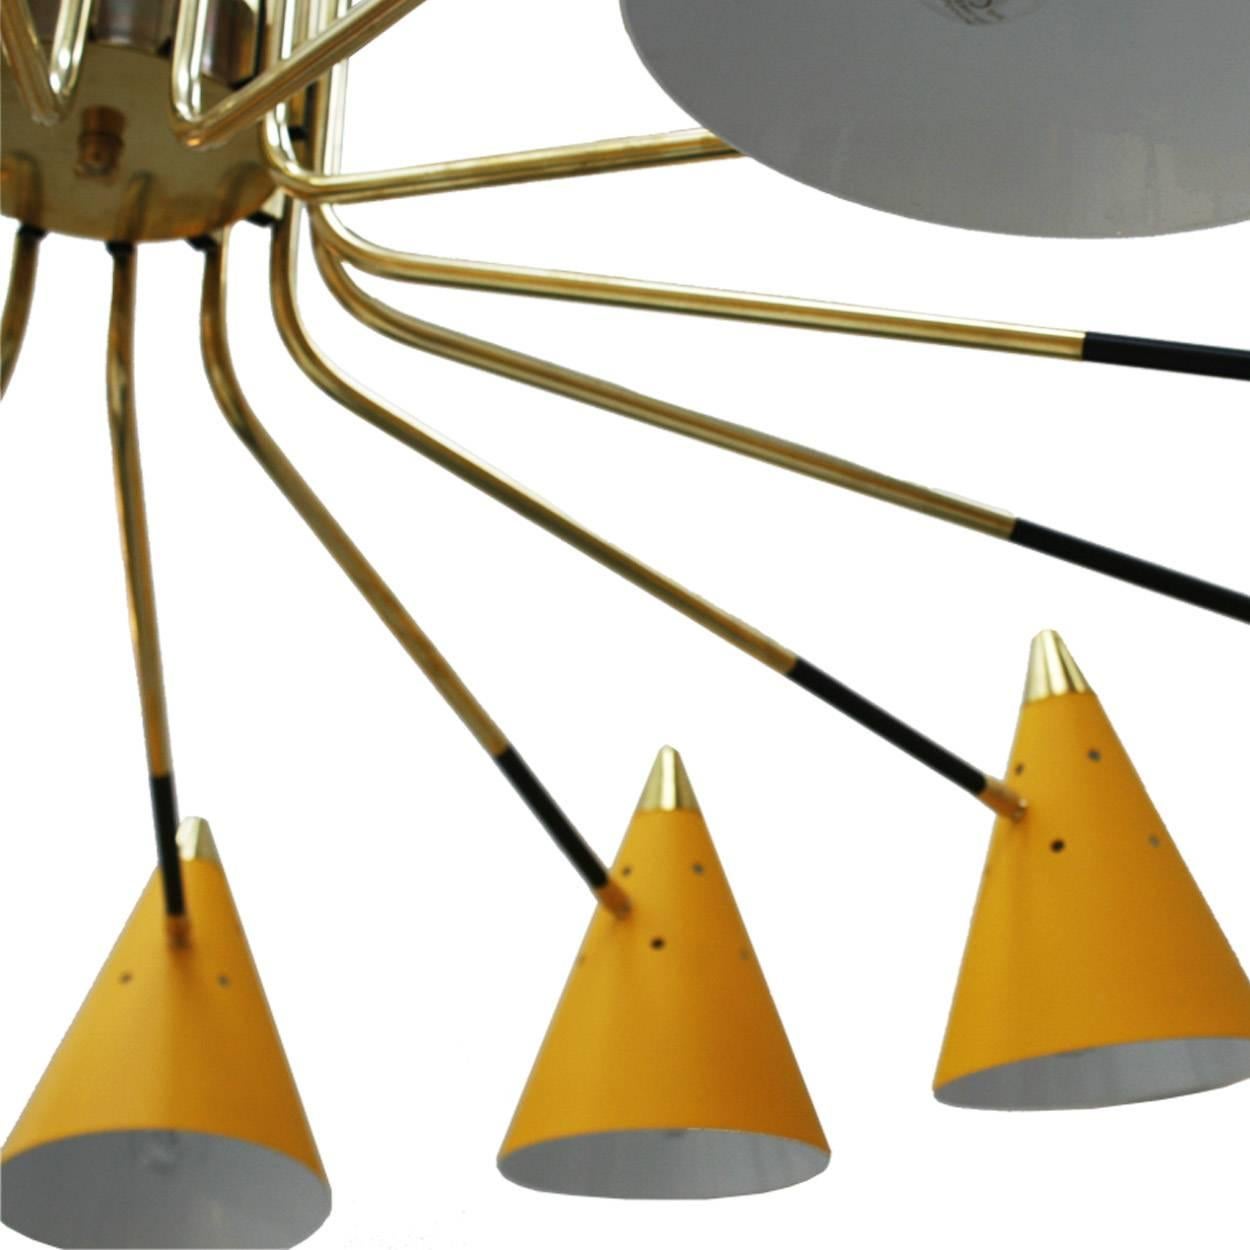 Im Stil der Mid-Century Modern Pendelleuchte. Bestehend aus vierzehn Glühbirnen, die aus gelb lackiertem Metall konische Form Tassen und Messing-Struktur gemacht. Hergestellt in Italien.

Unser Hauptziel ist die Zufriedenheit unserer Kunden, deshalb